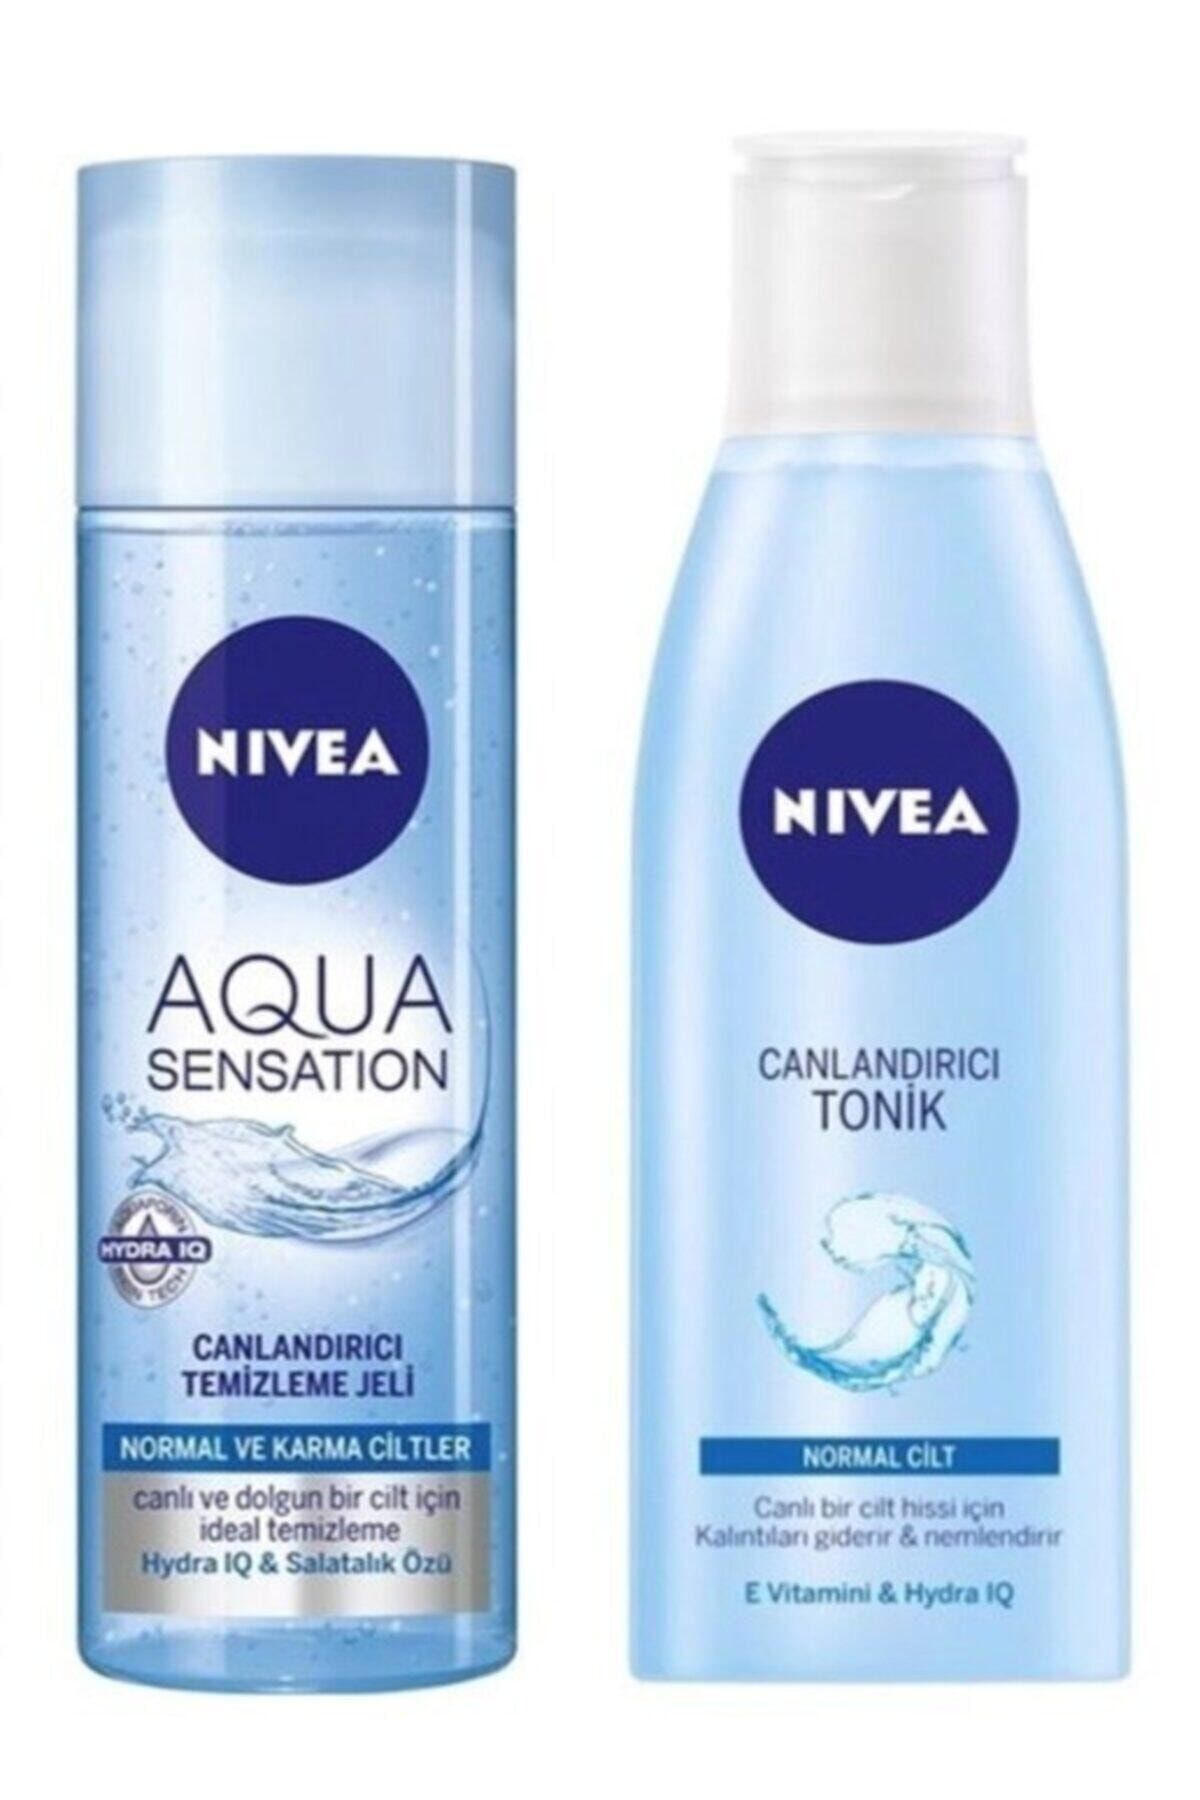 NIVEA Aqua Sensation Yüz Temizleme Jeli 200 Ml Canlandırıcı Yüz Tonik 200 Ml